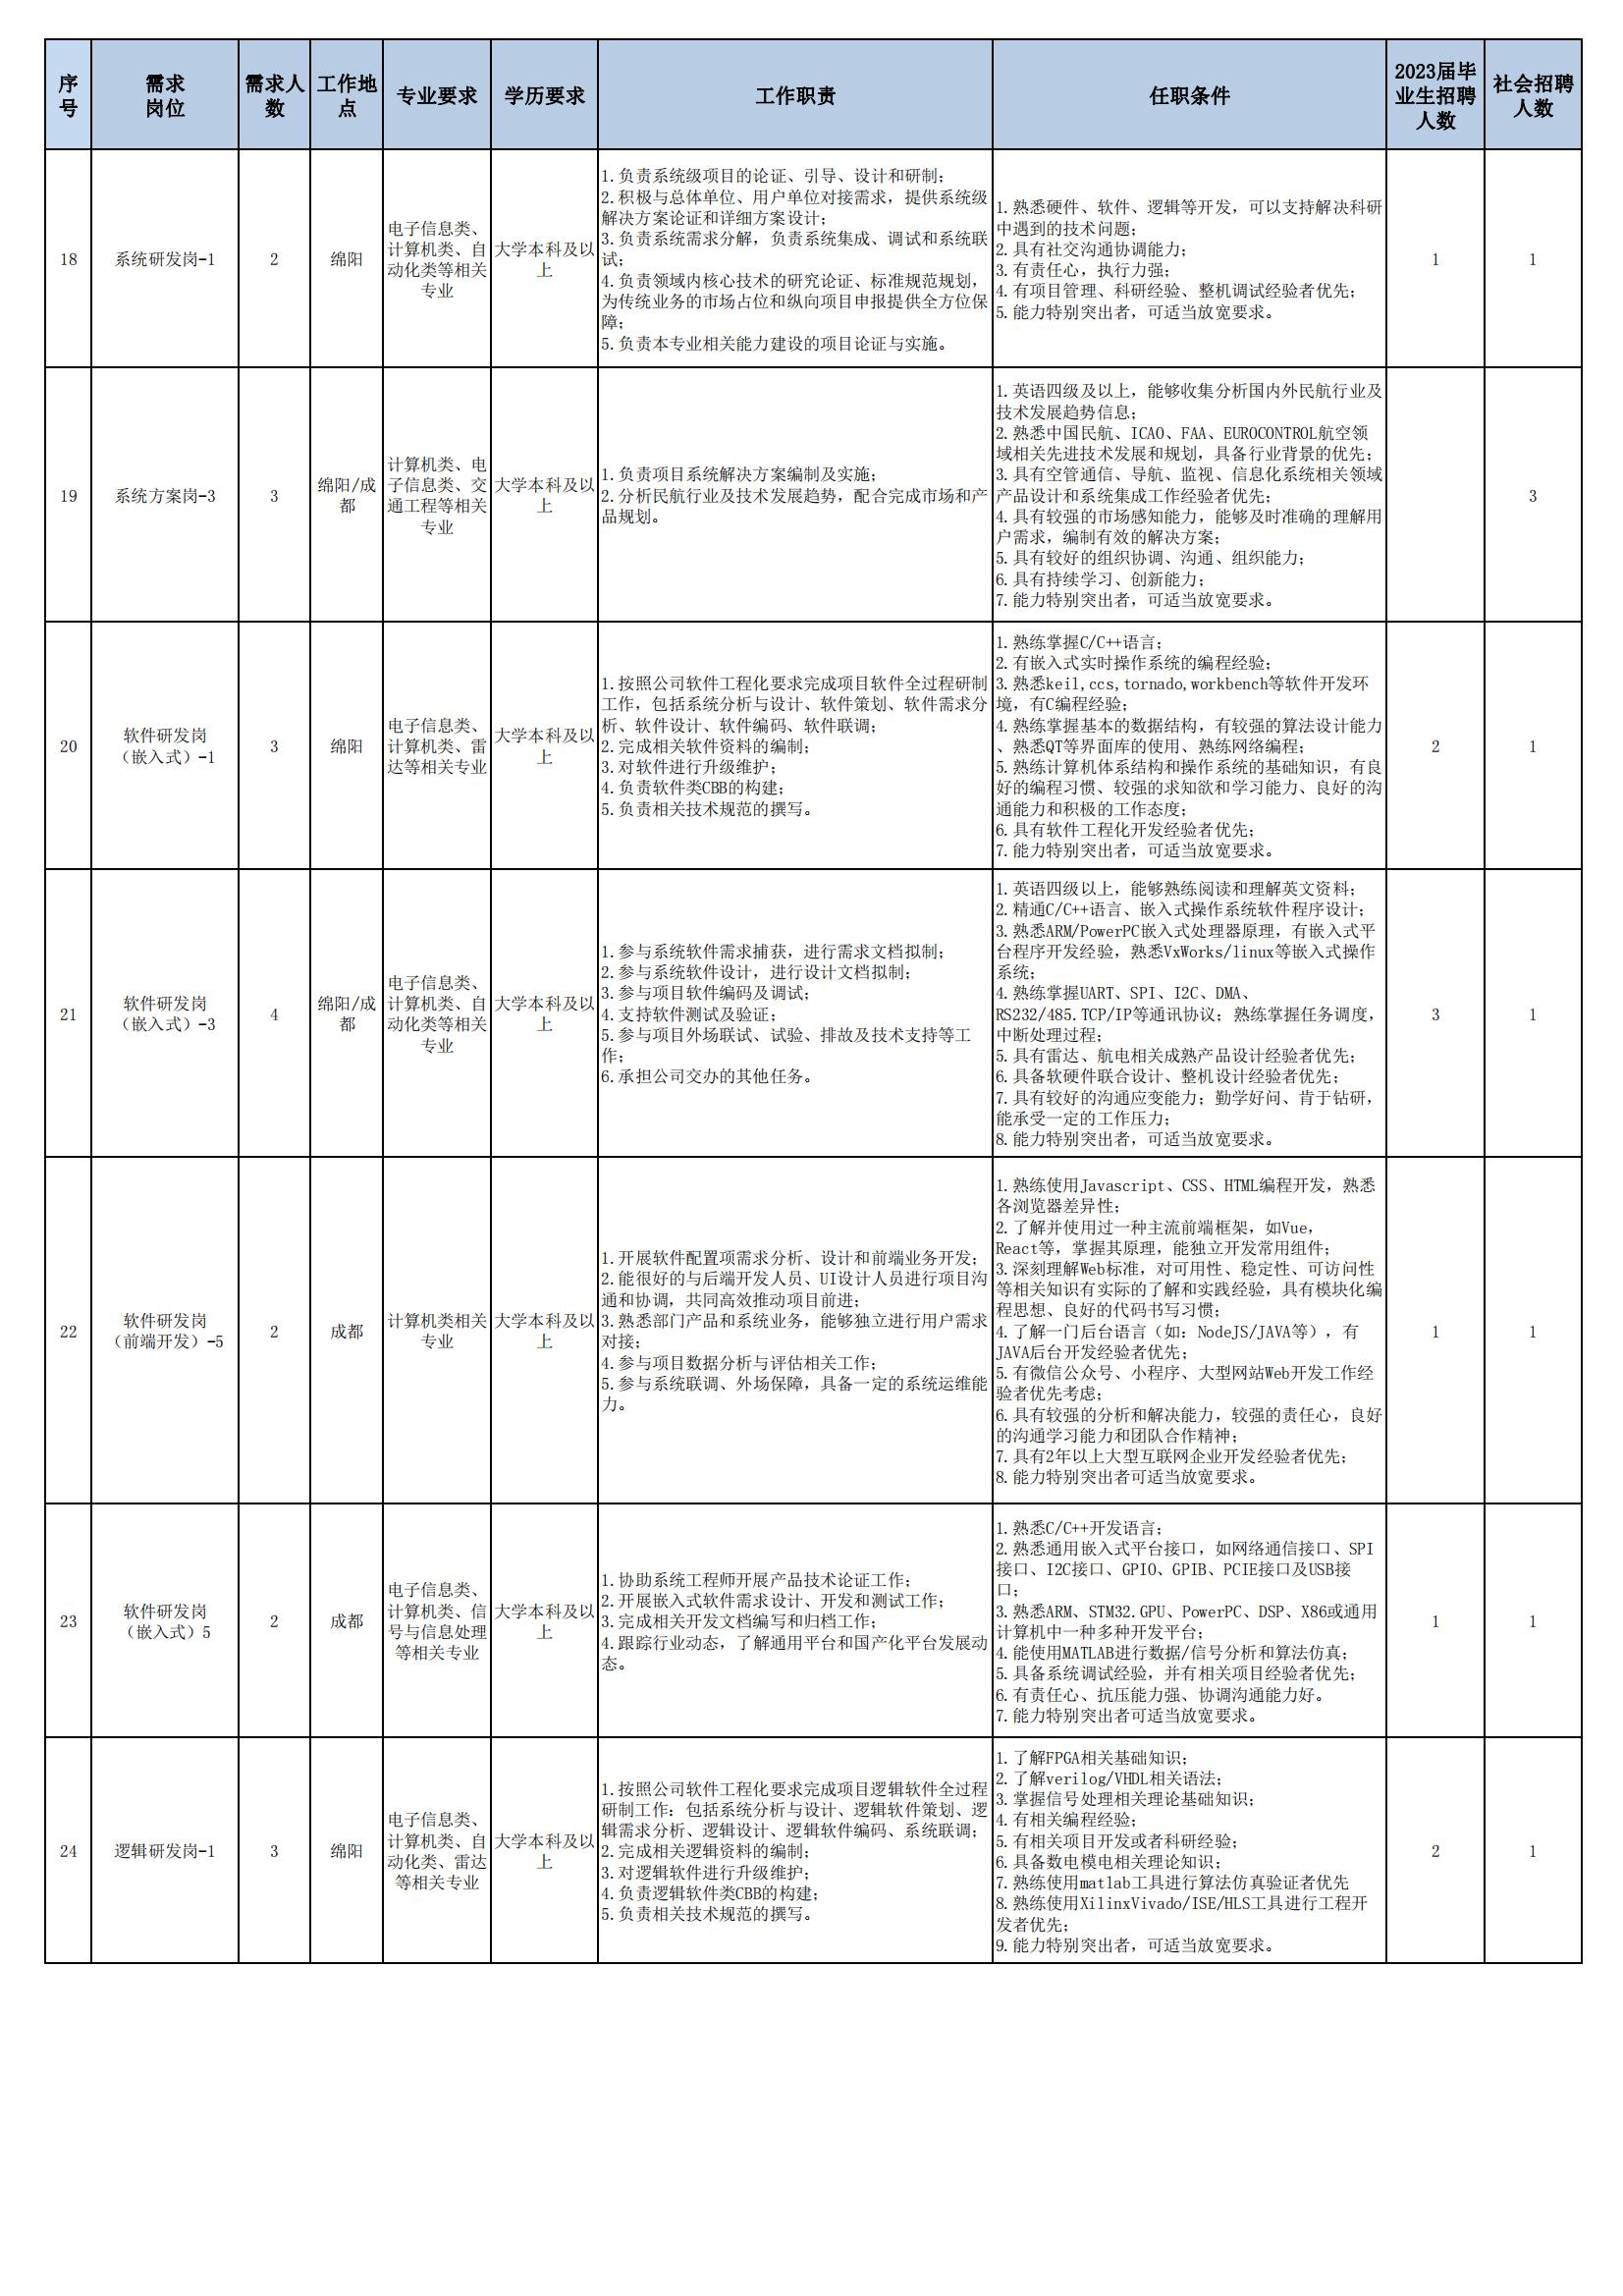 01 四川九洲空管科技有限责任公司招聘岗位列表 - 招聘公告（07月更新）_02.jpg